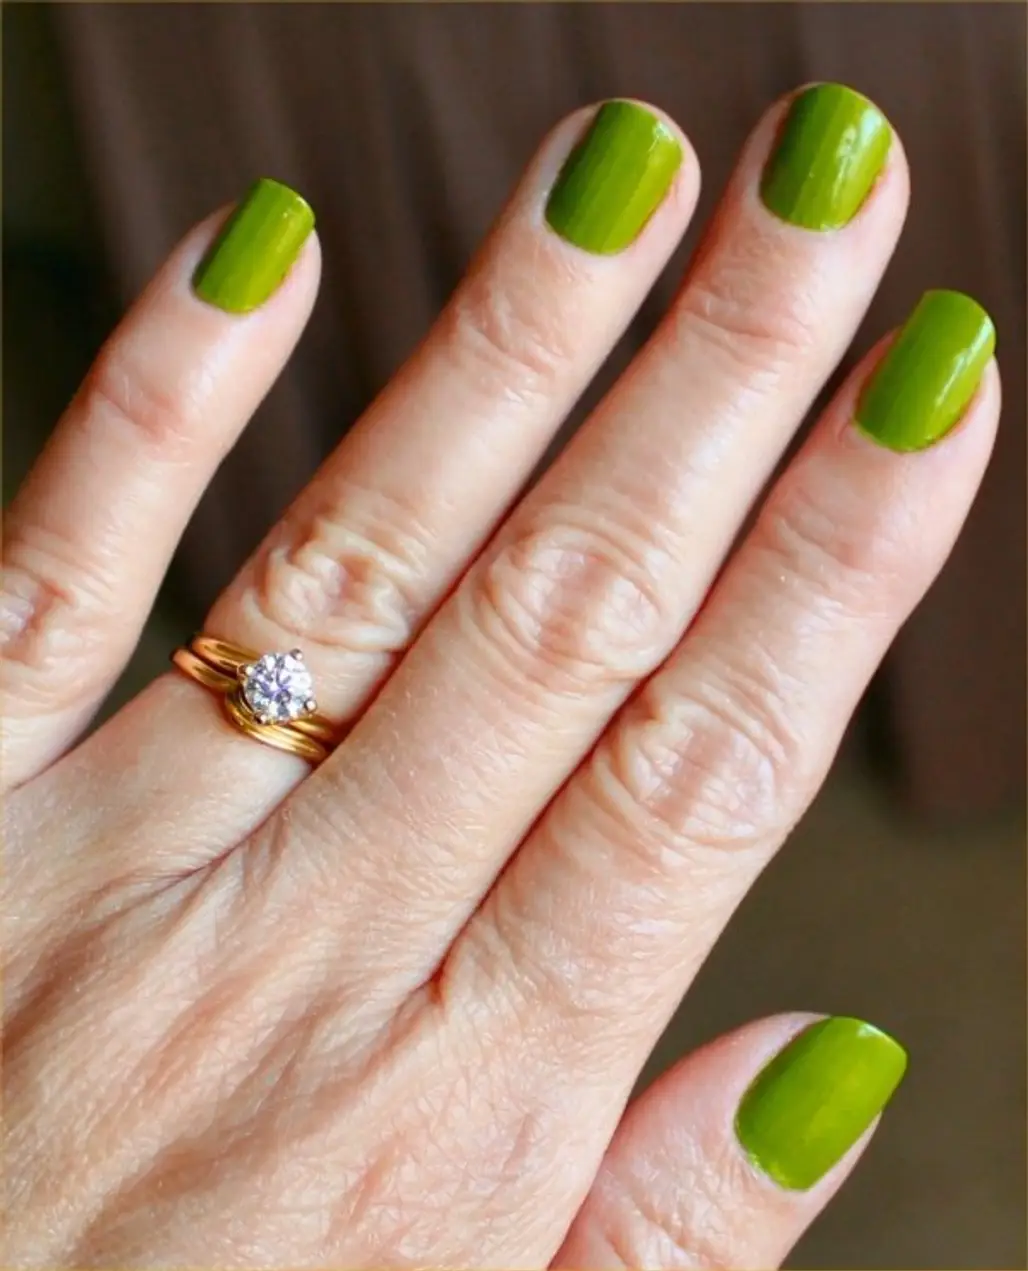 nail,finger,green,nail care,yellow,